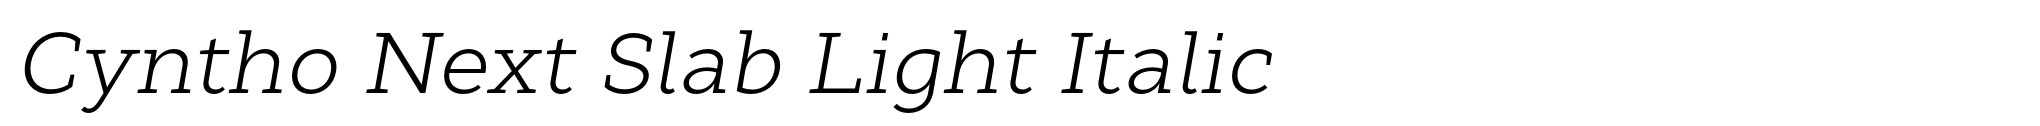 Cyntho Next Slab Light Italic image